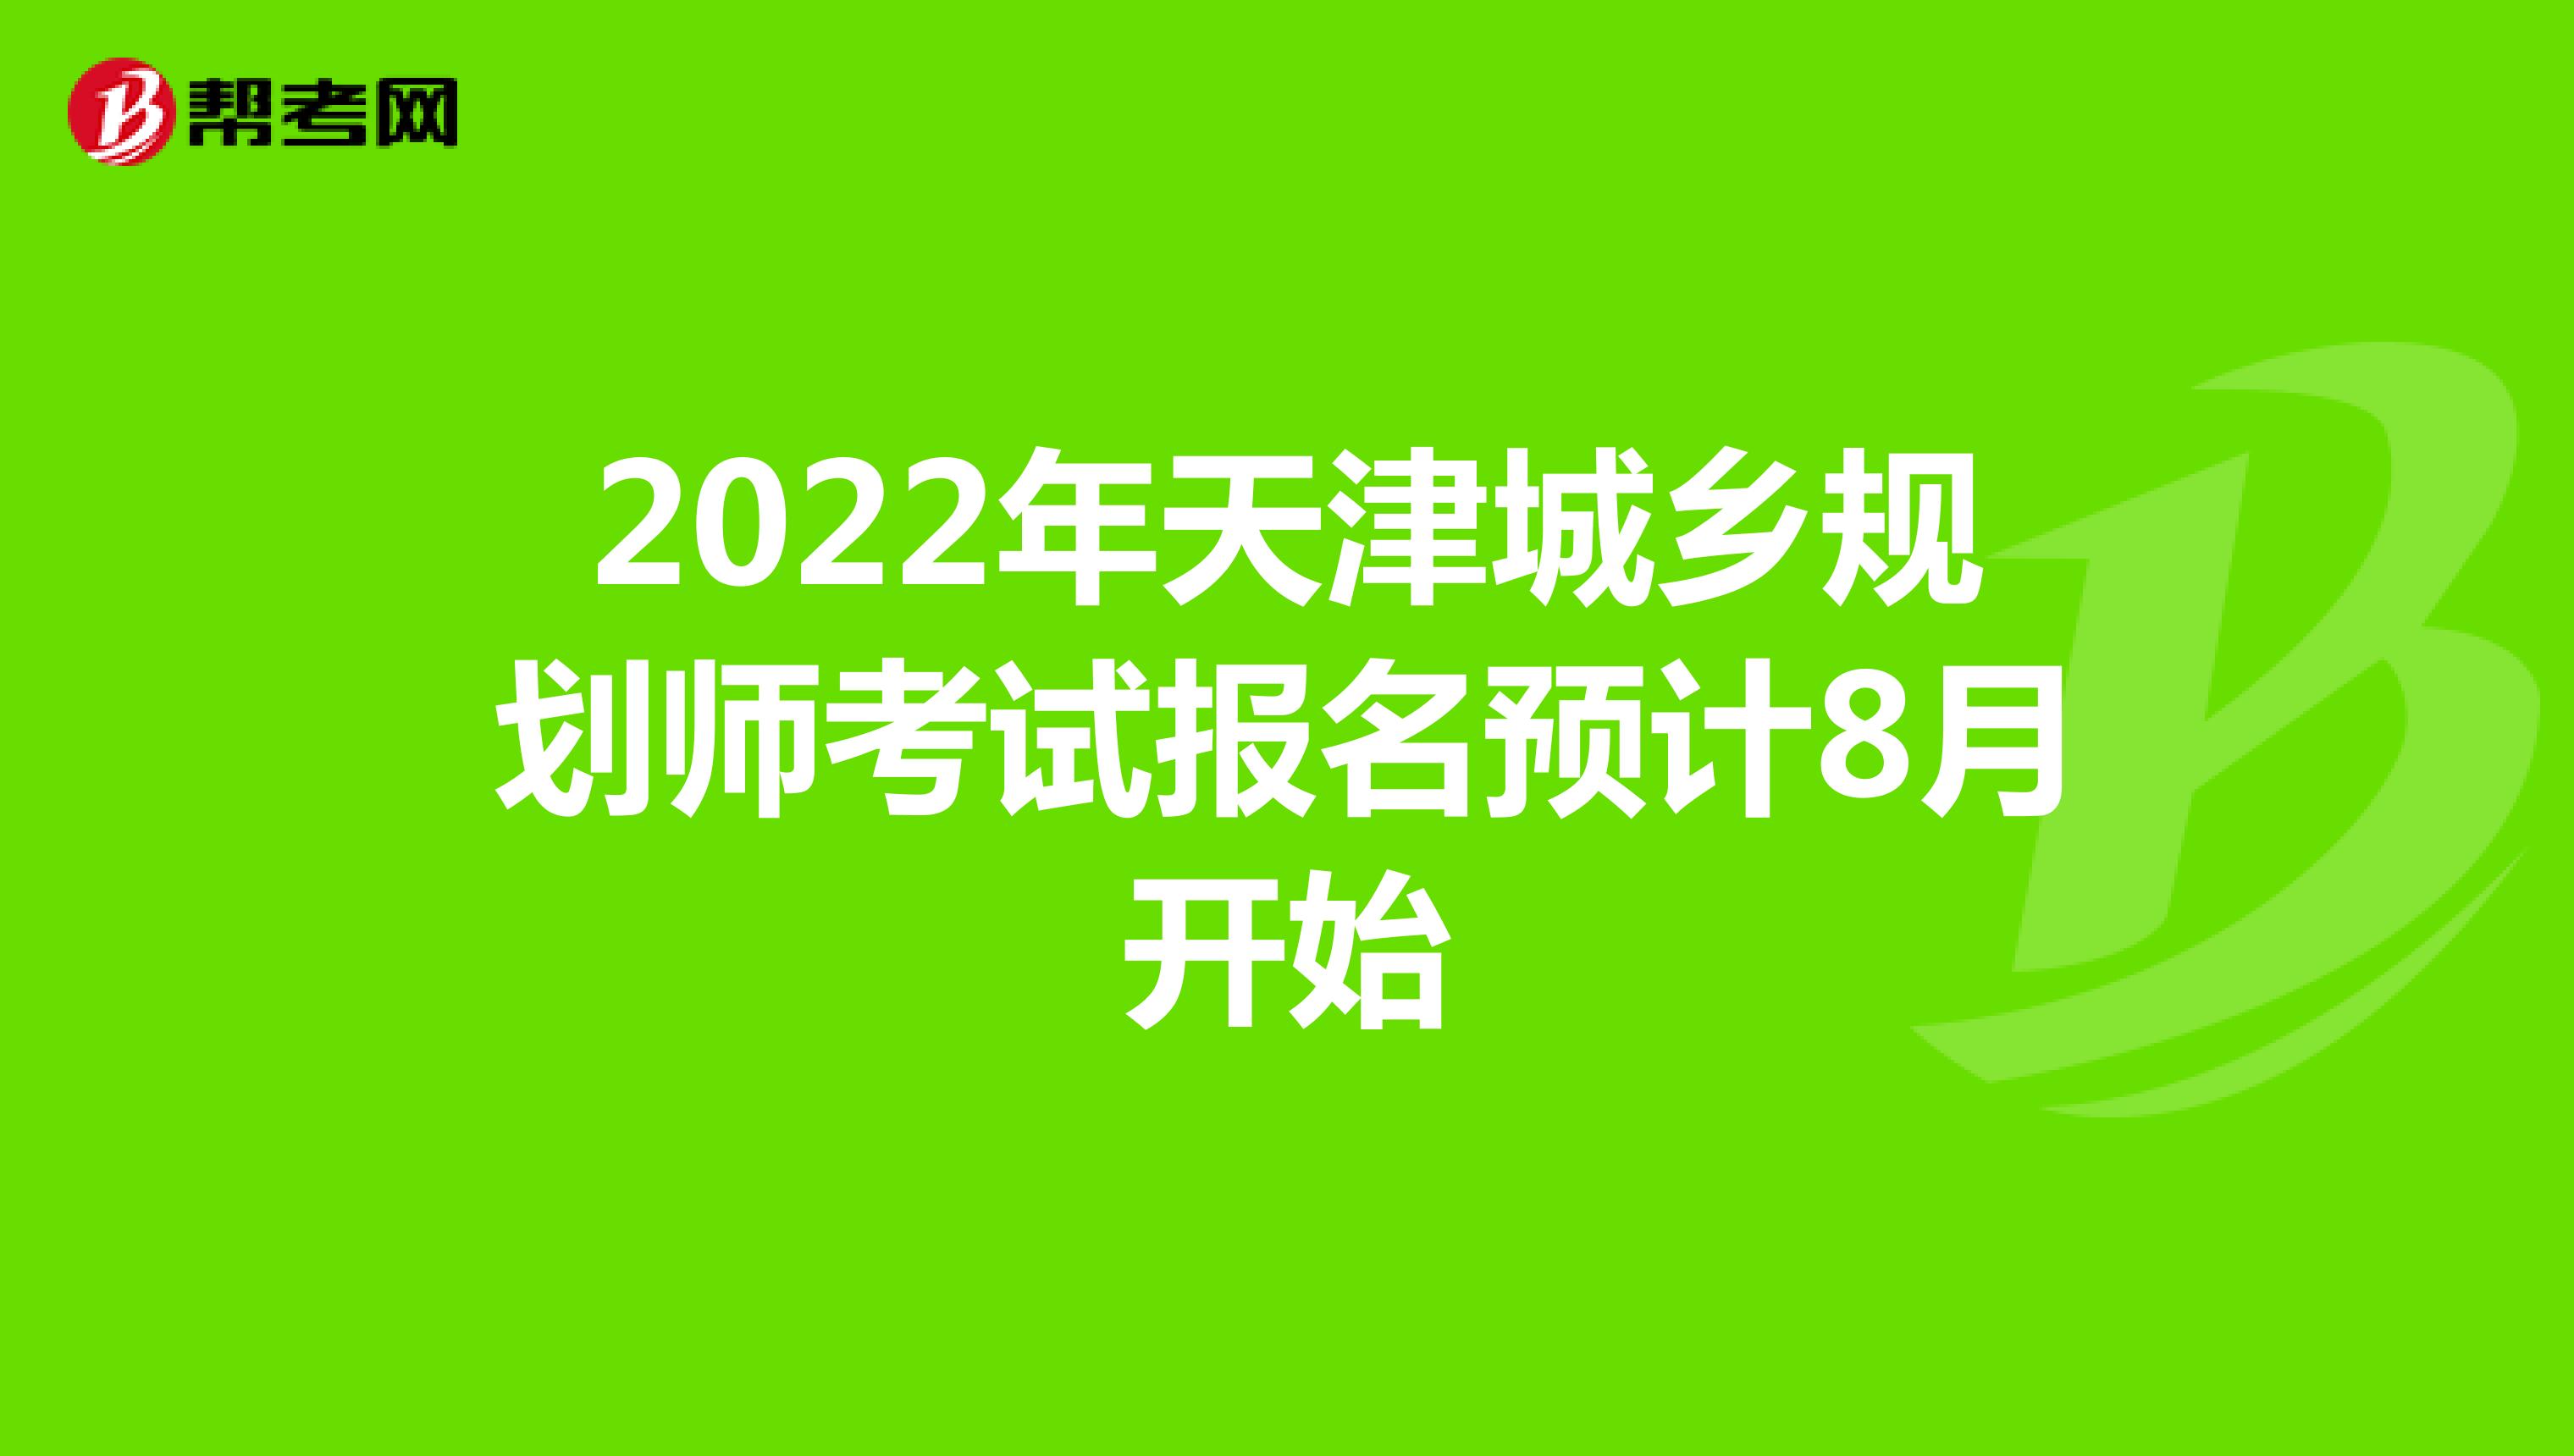 2022年天津城乡规划师考试报名预计8月开始